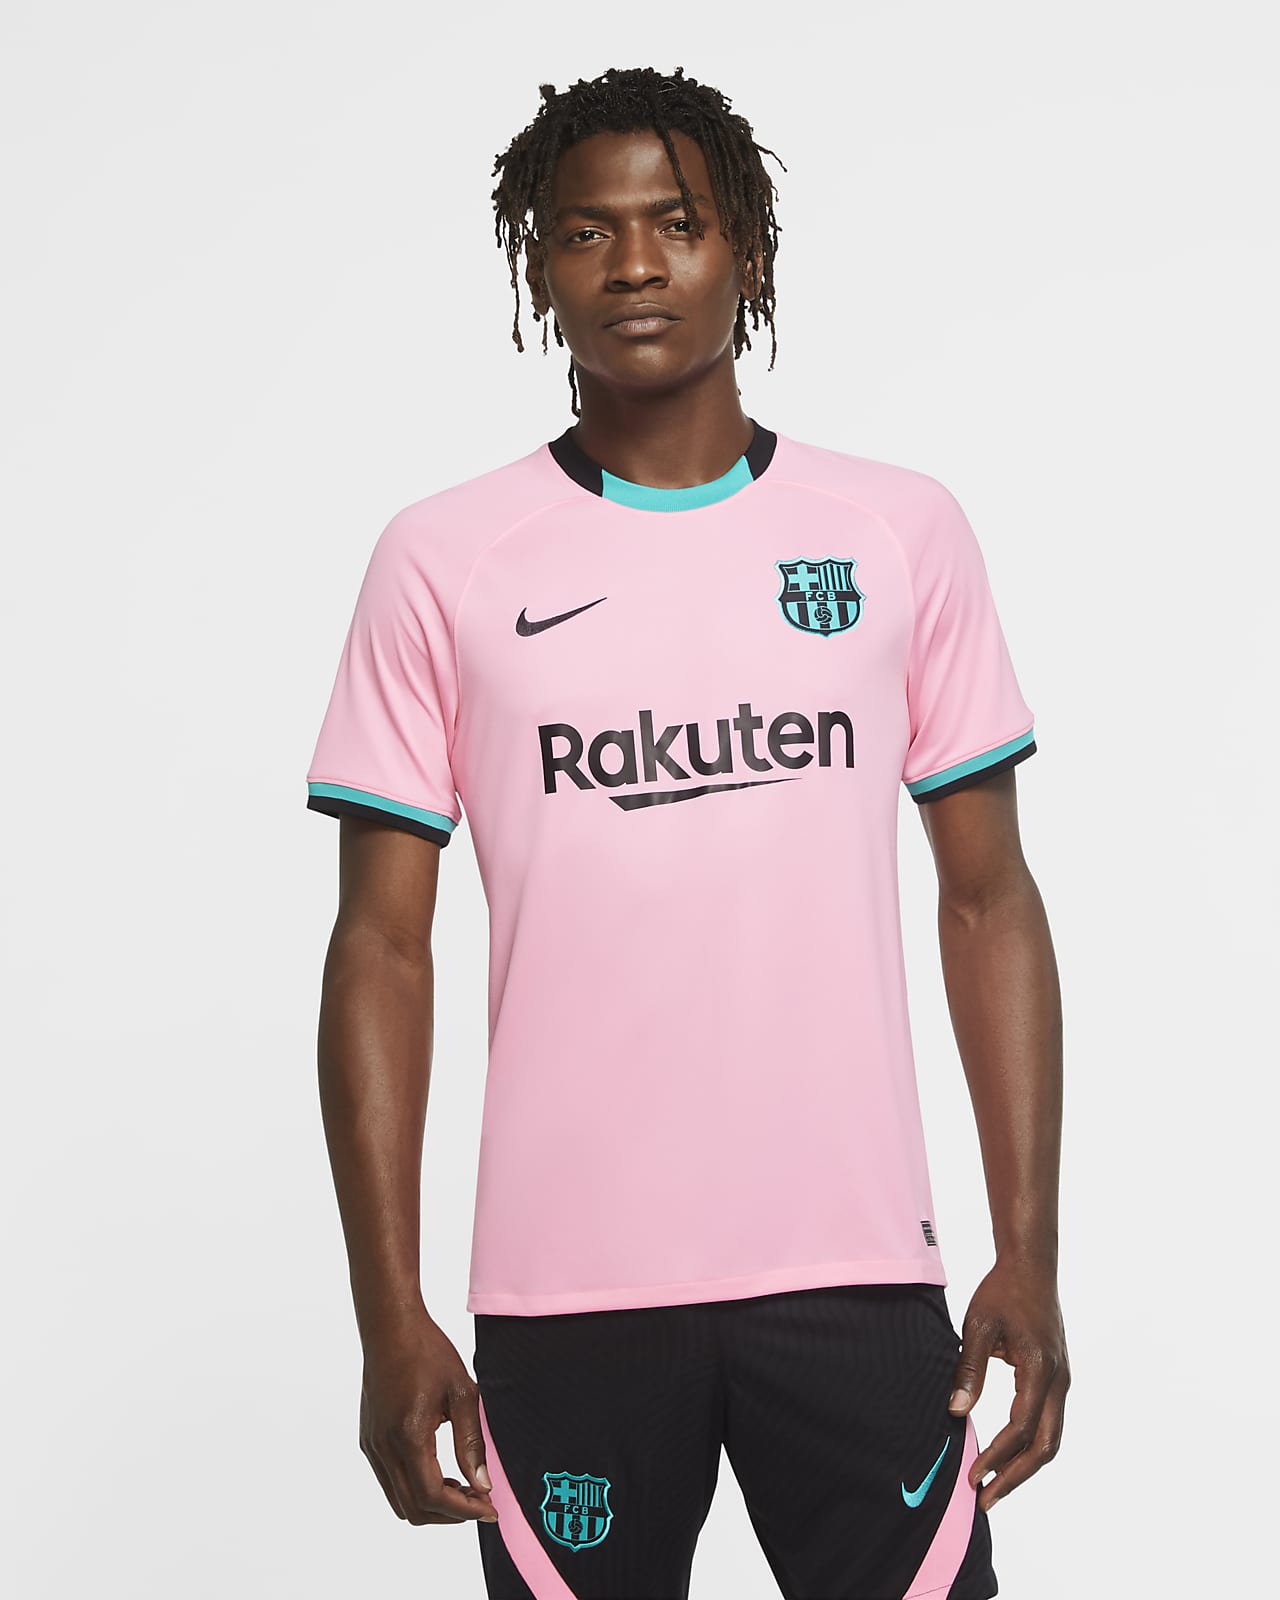 Camiseta de fútbol para hombre FC Barcelona alternativa Stadium 2020/21.  Nike.com